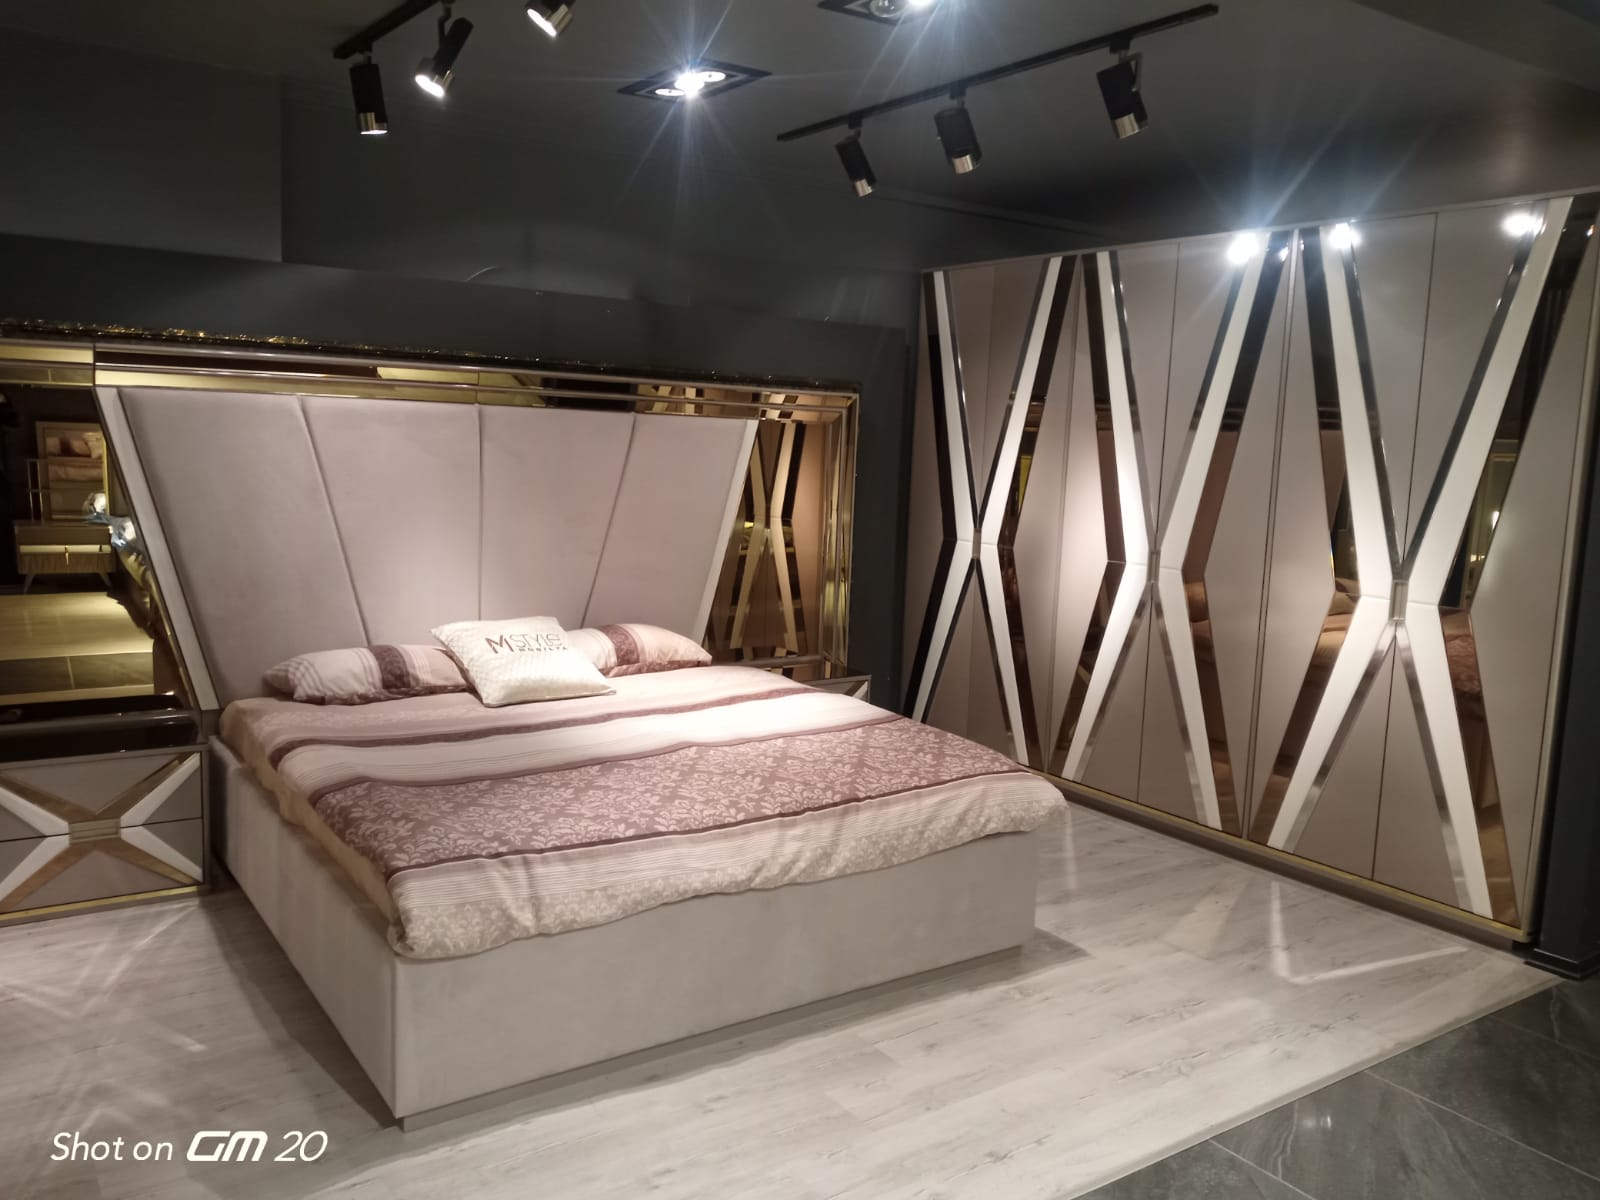 Chambres à coucher de Turque Des chambres a coucher Turque disponibles en plusieurs modèles.
Livraison + montage gratuit dans la ville de Dakar.
Veuillez nous contacter pour plus d